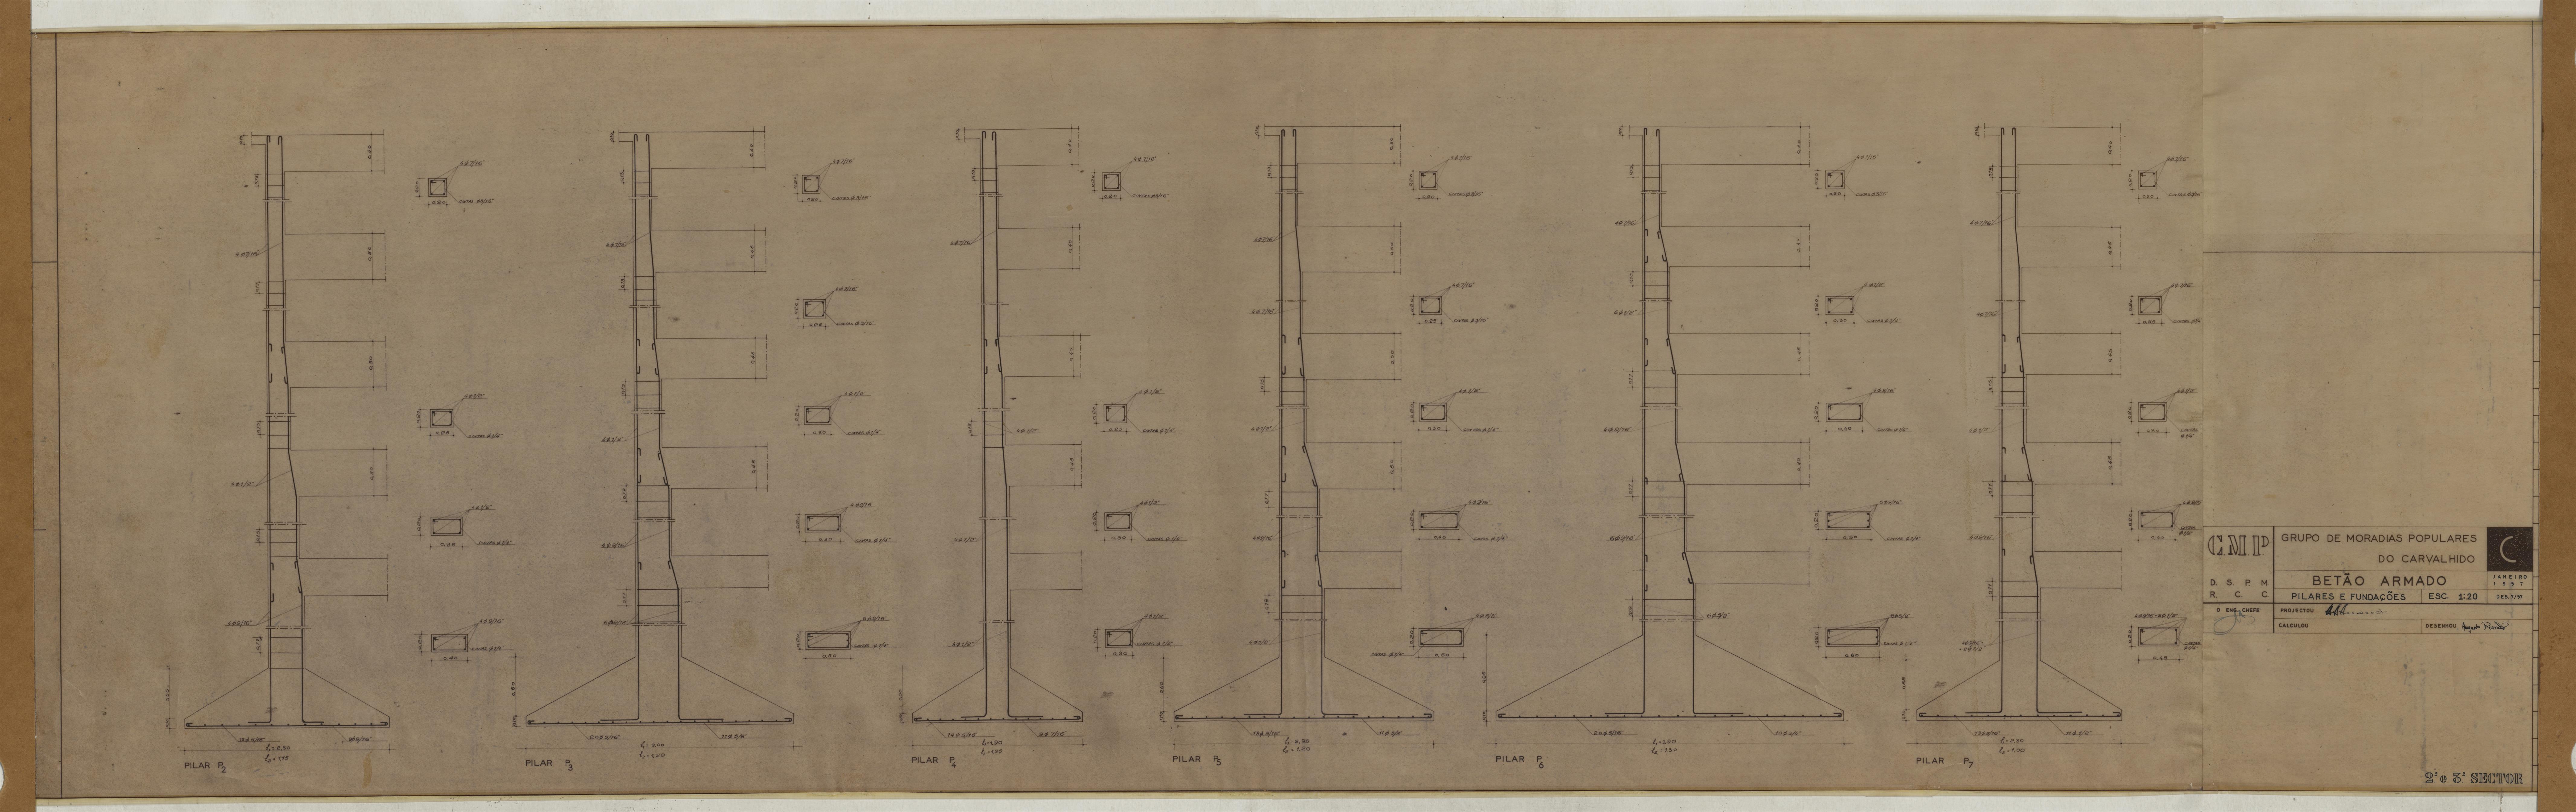 Bairro do Carvalhido : fundações e estrutura : estabilidade : pormenores de vigas, pilares e lajes